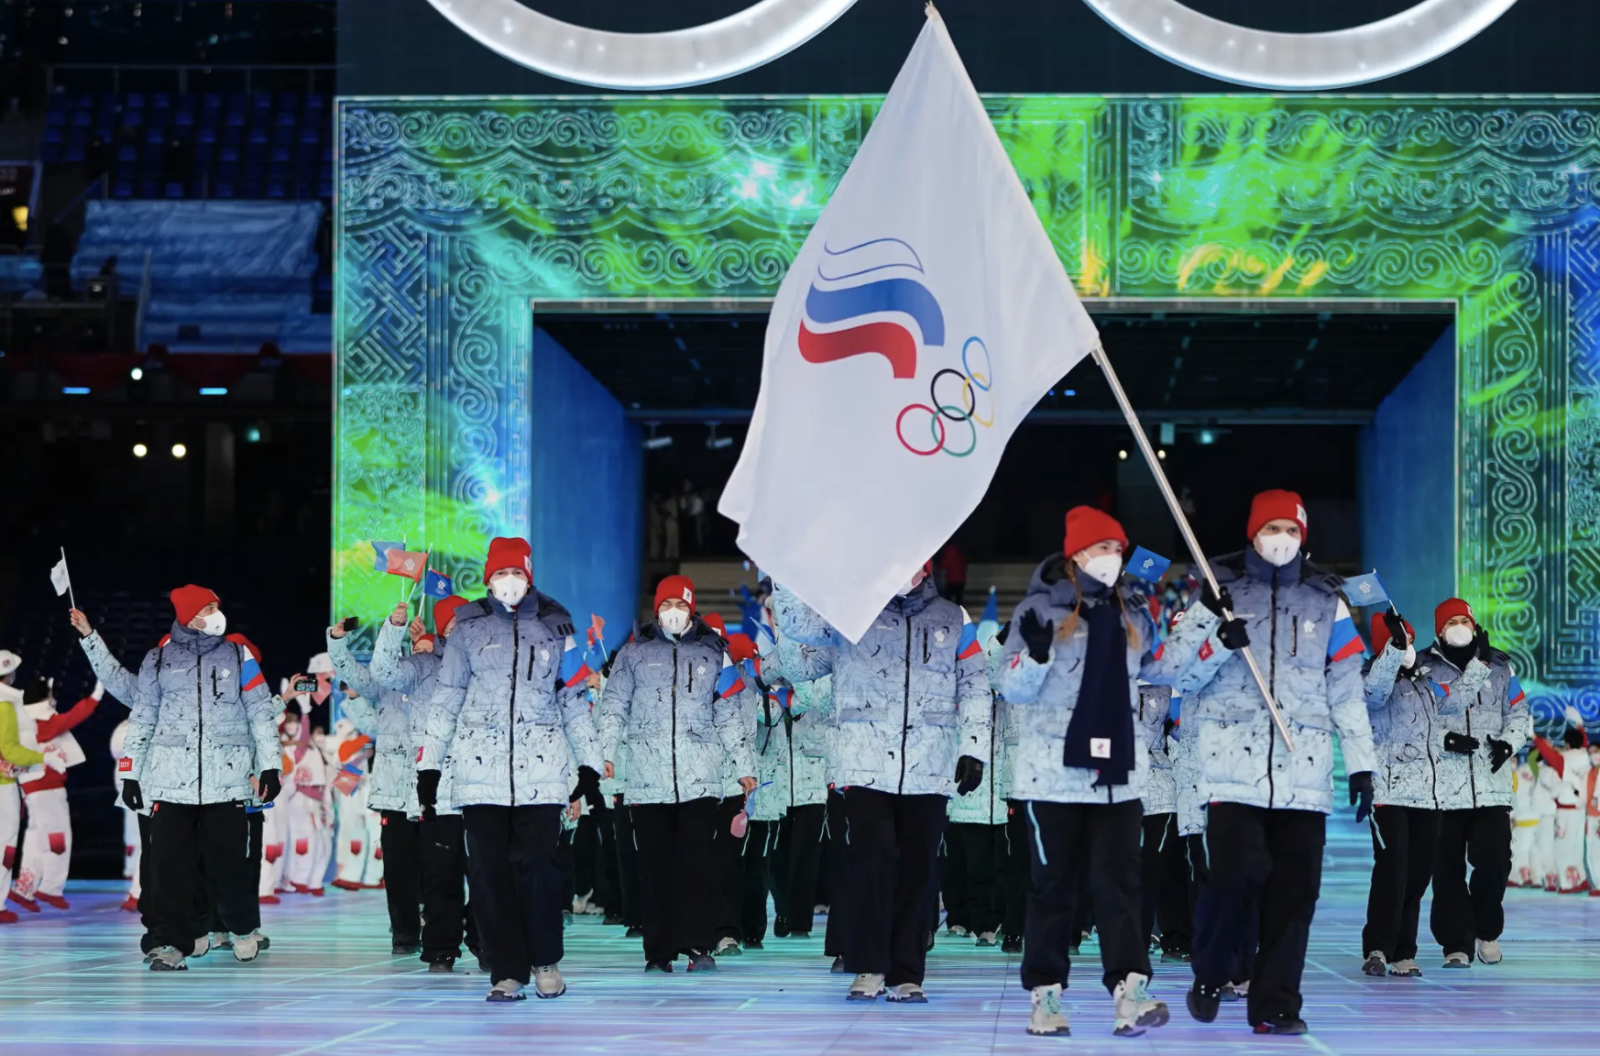 Việc cấm quốc kỳ Nga tại Olympic Bắc Kinh và sử dụng lá cờ Olympic mấy màu đúng ý nghĩa sẽ giúp tôn vinh giá trị thể thao và tâm huyết của những vận động viên đến từ các quốc gia khác nhau. Khi ủng hộ và cổ vũ cho các vận động viên, chúng ta nên đặt trên hết giá trị công bằng, tôn trọng và tình đồng đội, chứ không phải sự ganh đua và tranh cãi vô lý.